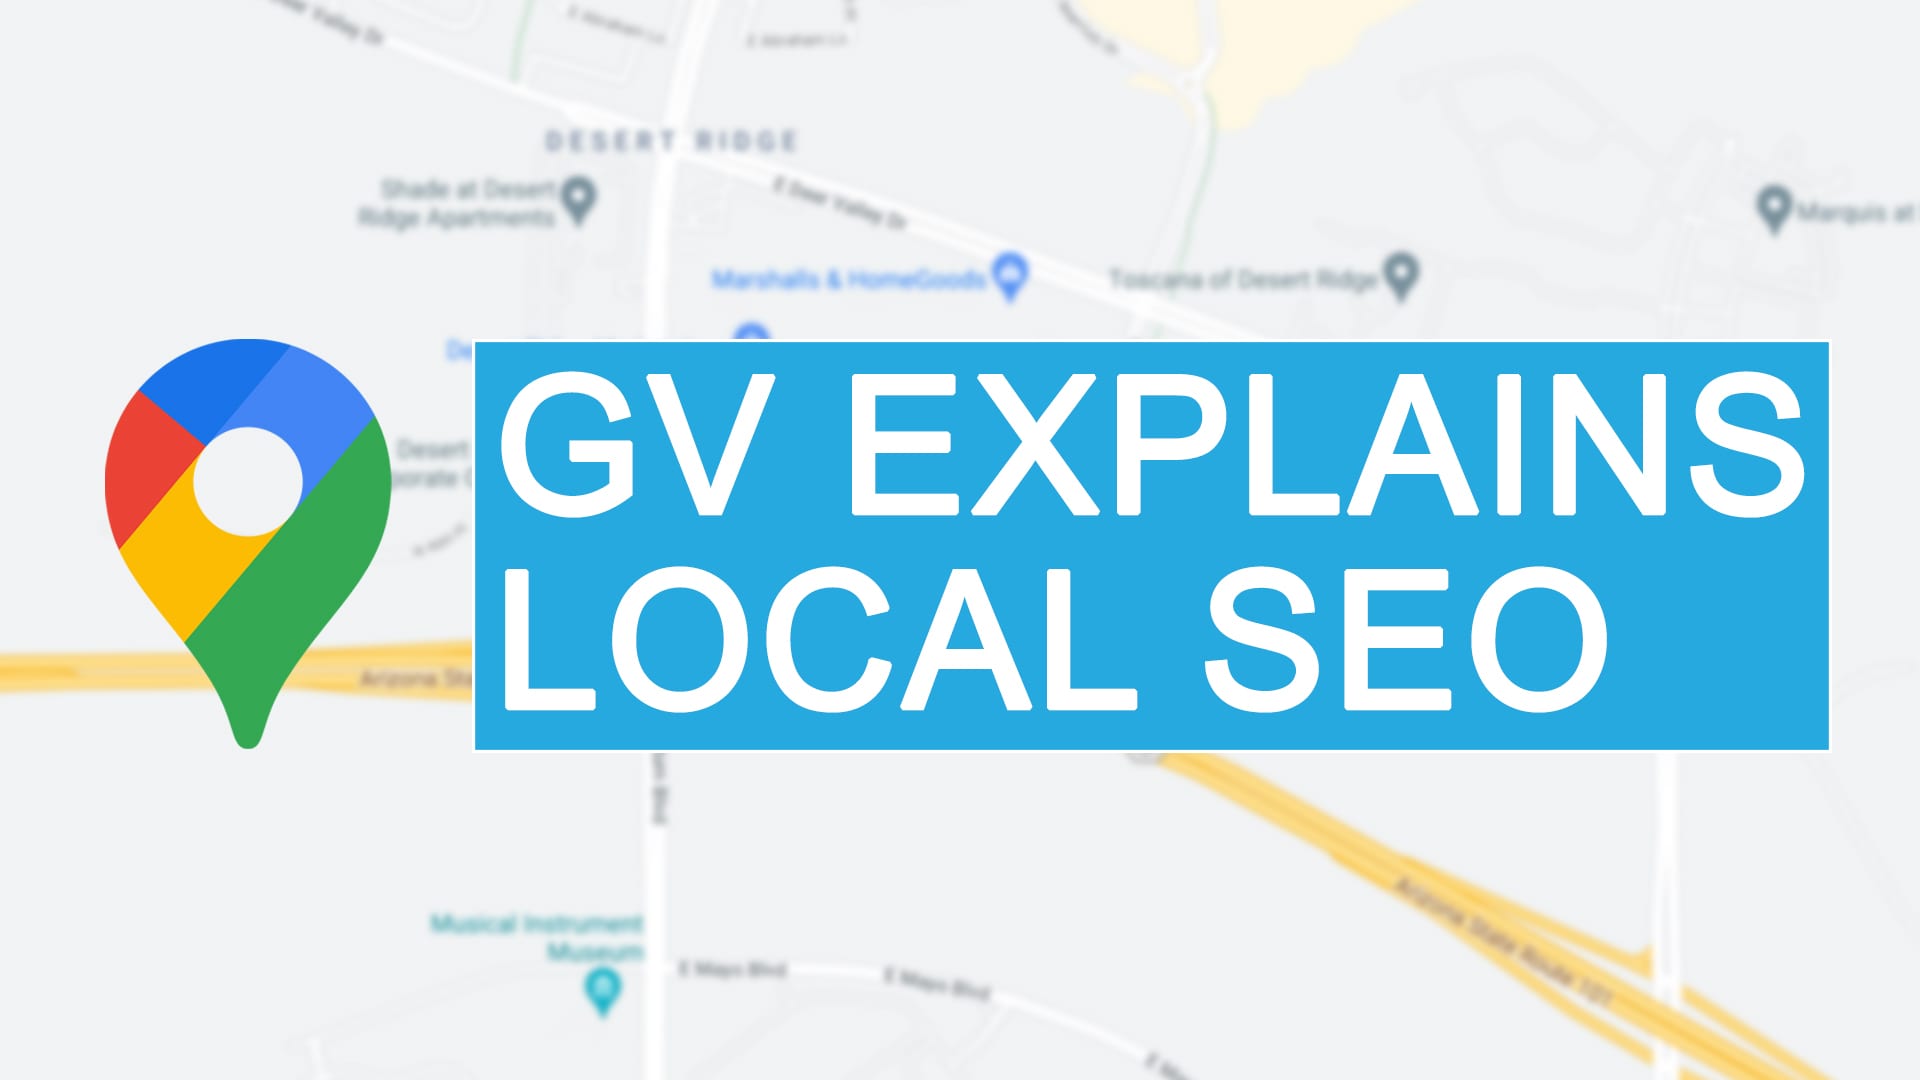 GV Explains Local SEO